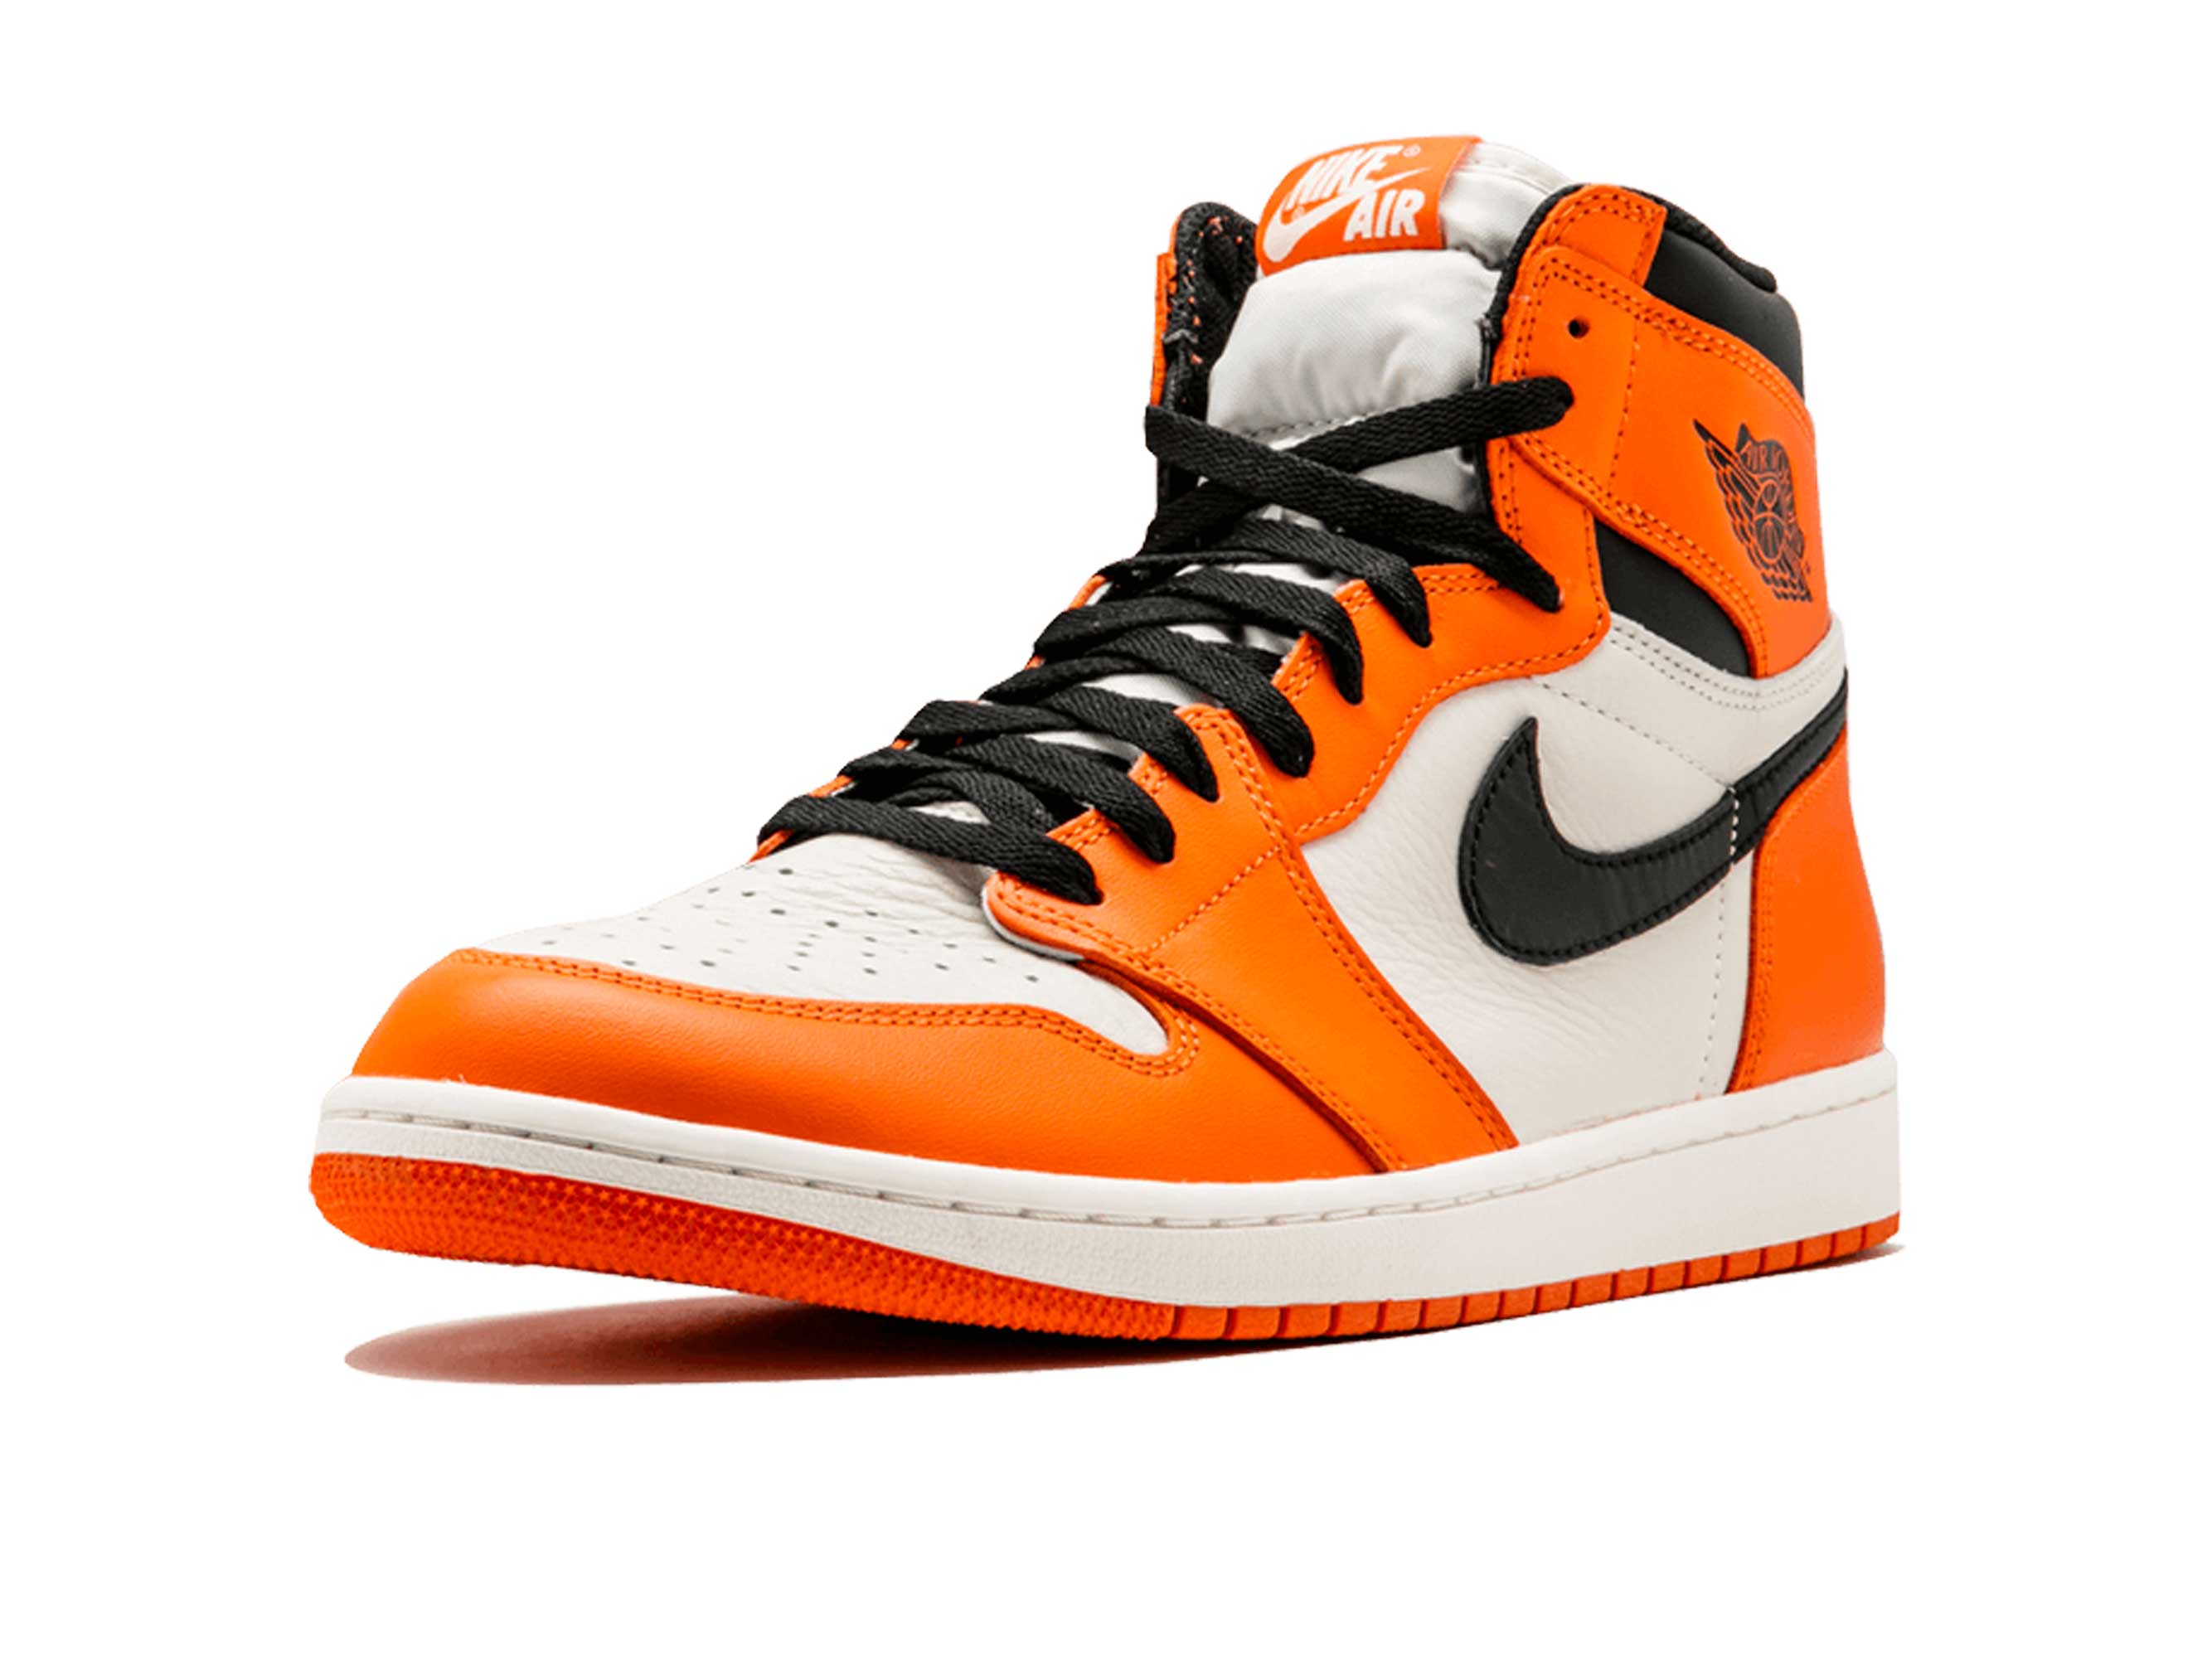 Air Jordan 1 Orange